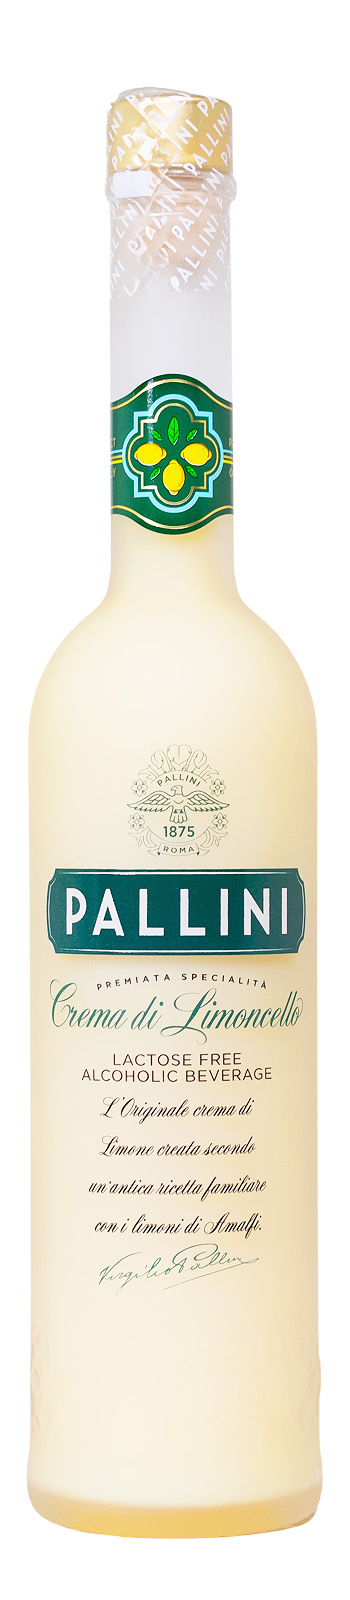 Pallini Crema di Limoncello - 0,5L 14,5% vol